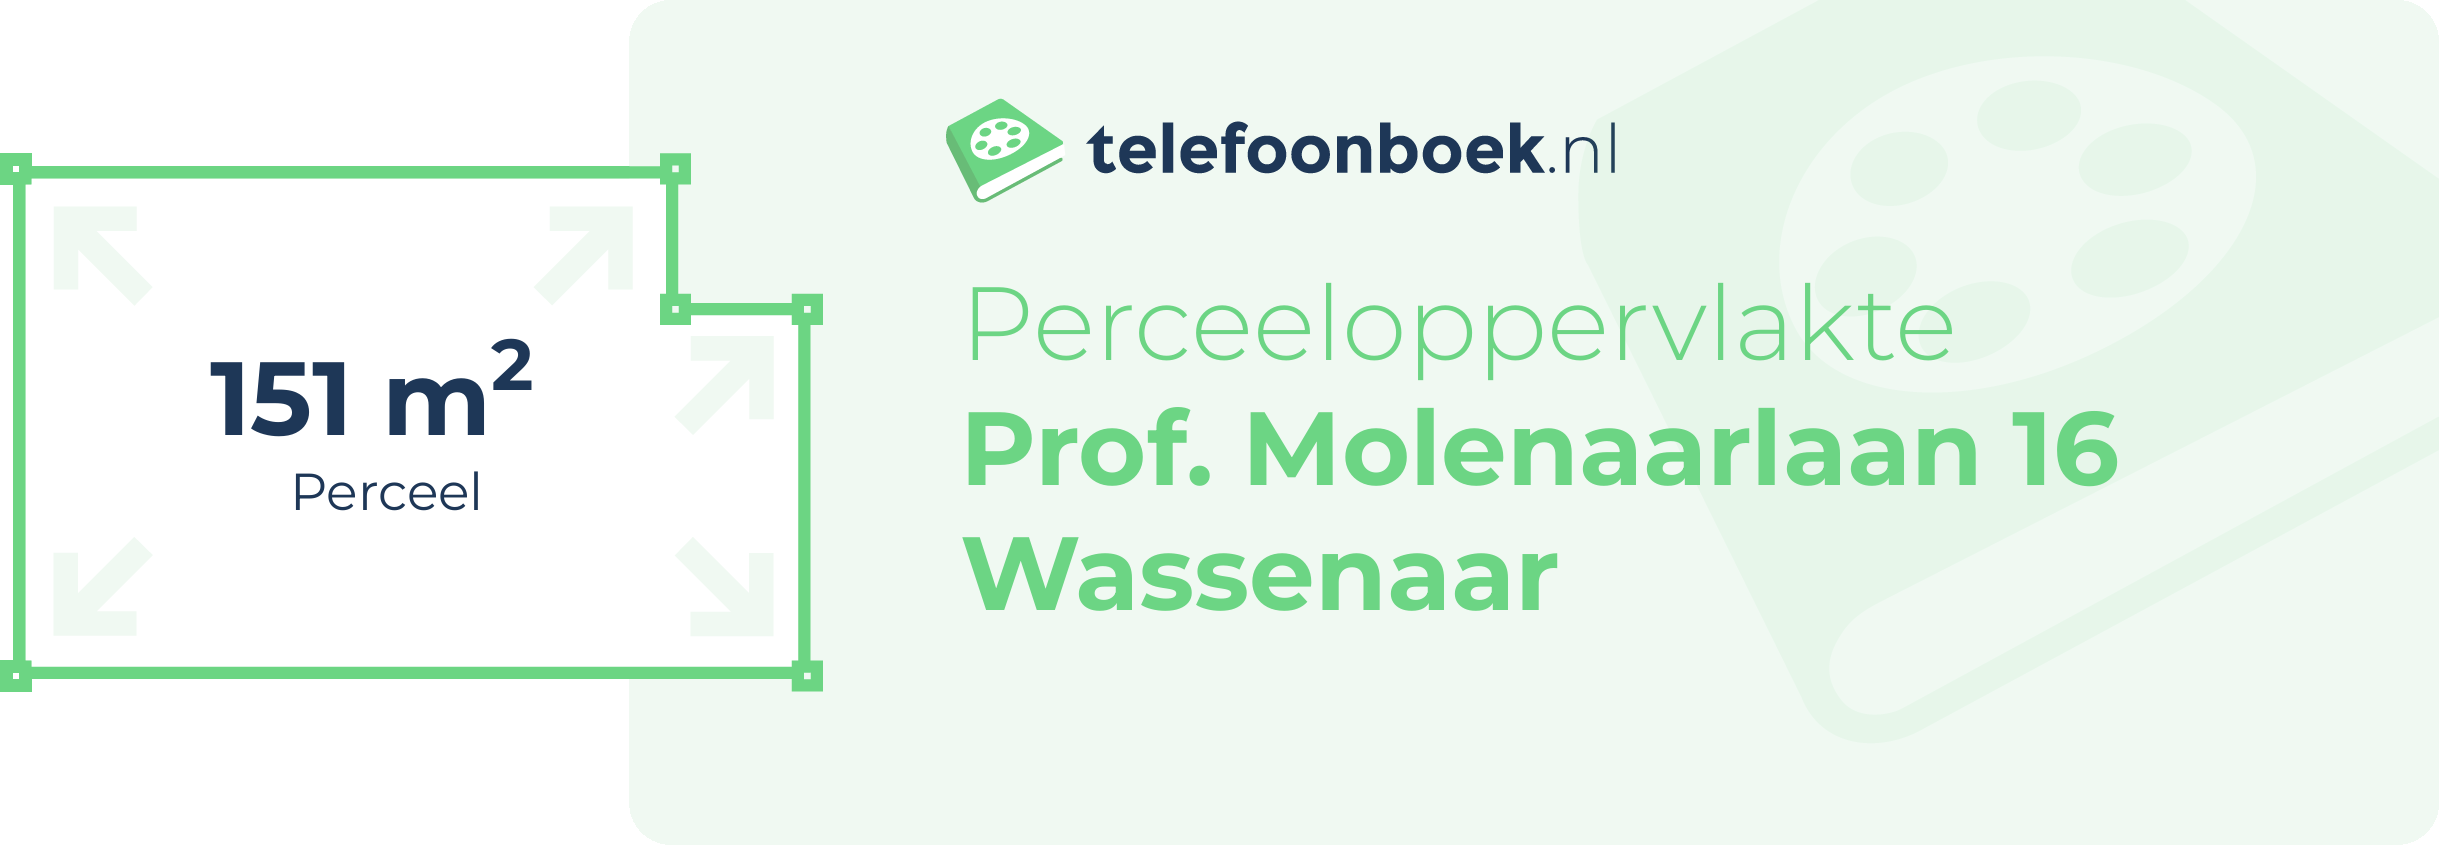 Perceeloppervlakte Prof. Molenaarlaan 16 Wassenaar